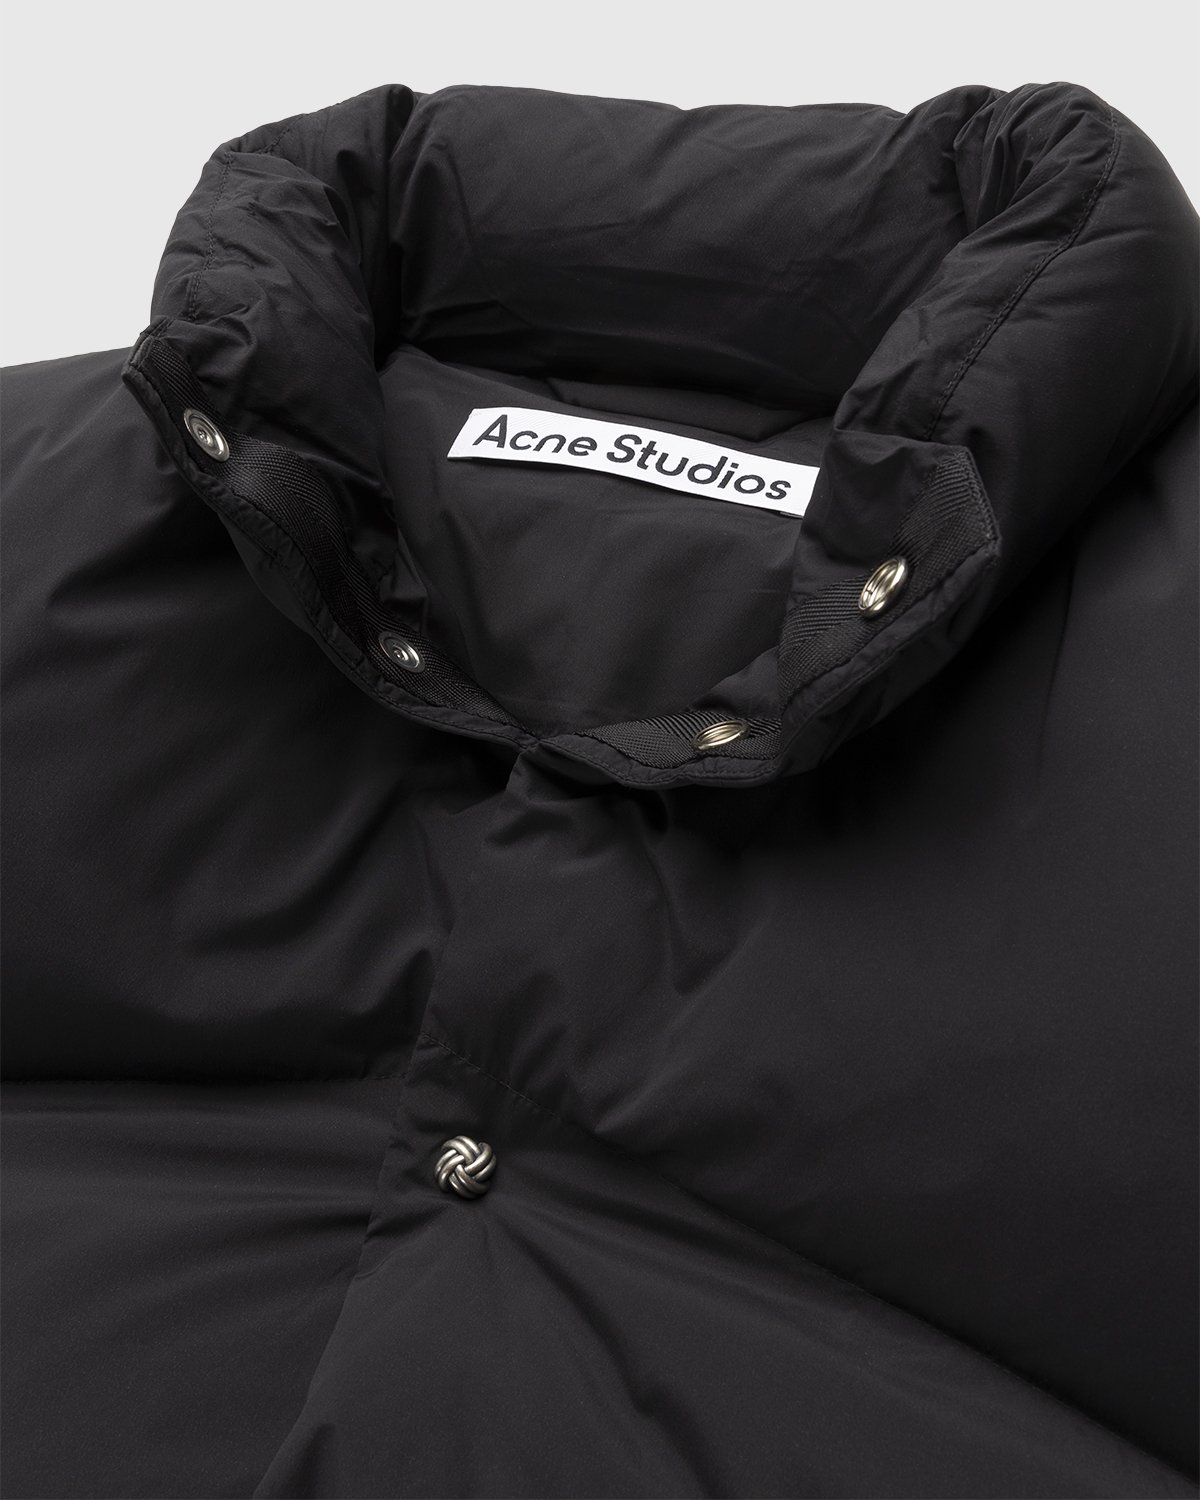 Acne Studios - Puffer Jacket Black - Clothing - Black - Image 5